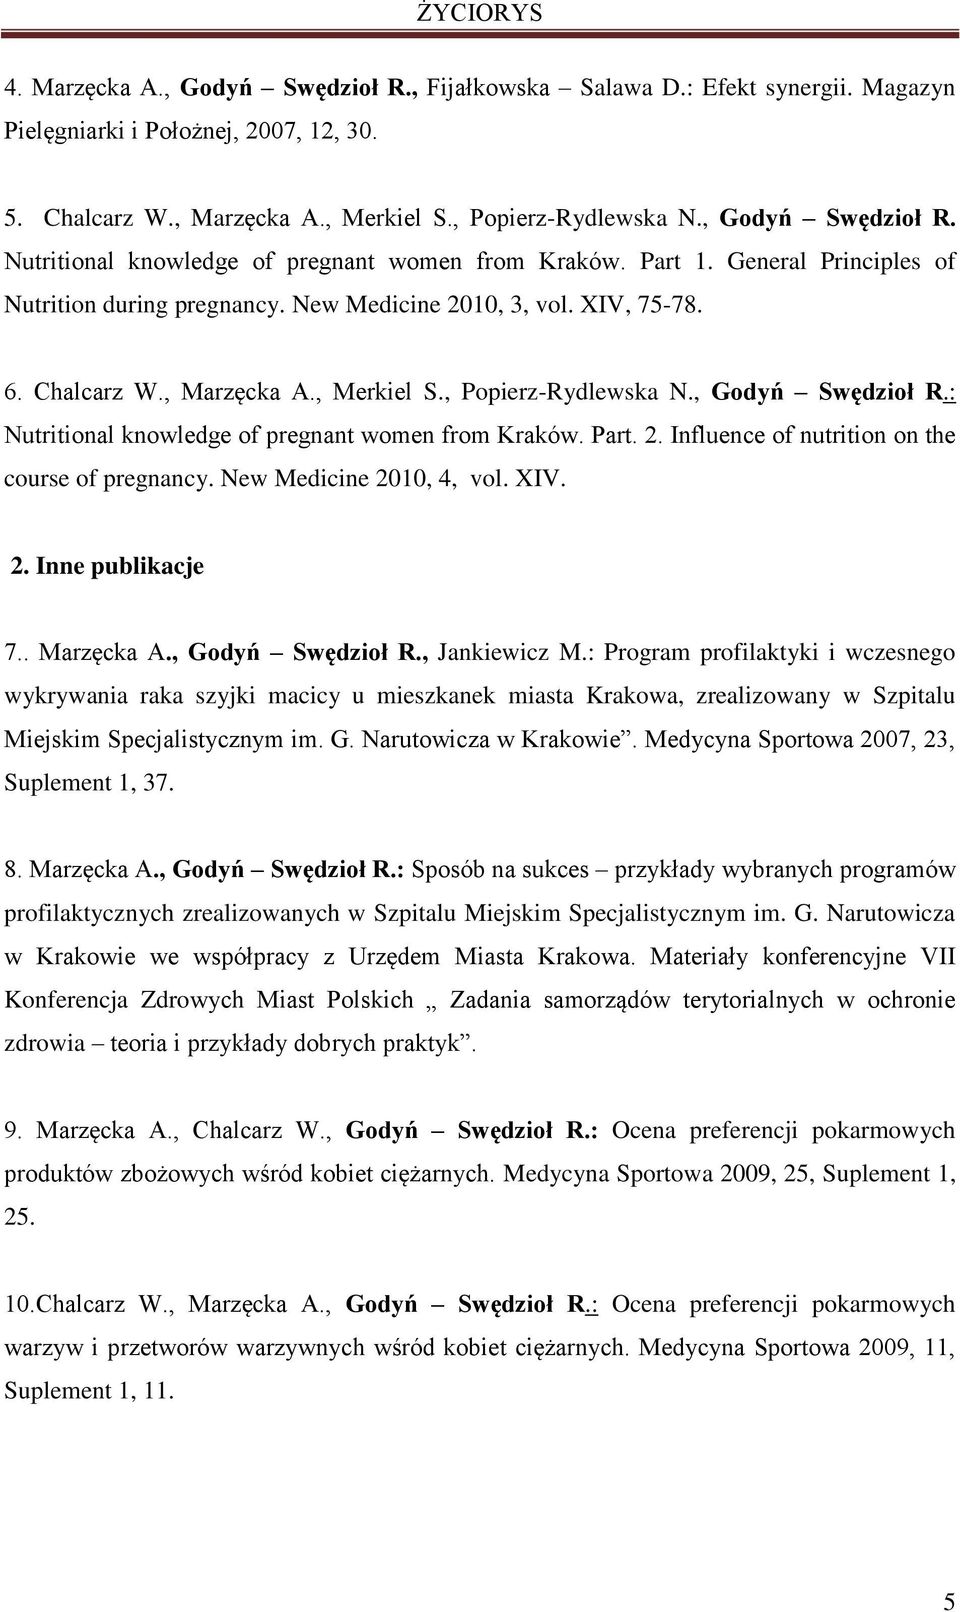 , Merkiel S., Popierz-Rydlewska N., Godyń Swędzioł R.: Nutritional knowledge of pregnant women from Kraków. Part. 2. Influence of nutrition on the course of pregnancy. New Medicine 2010, 4, vol. XIV.